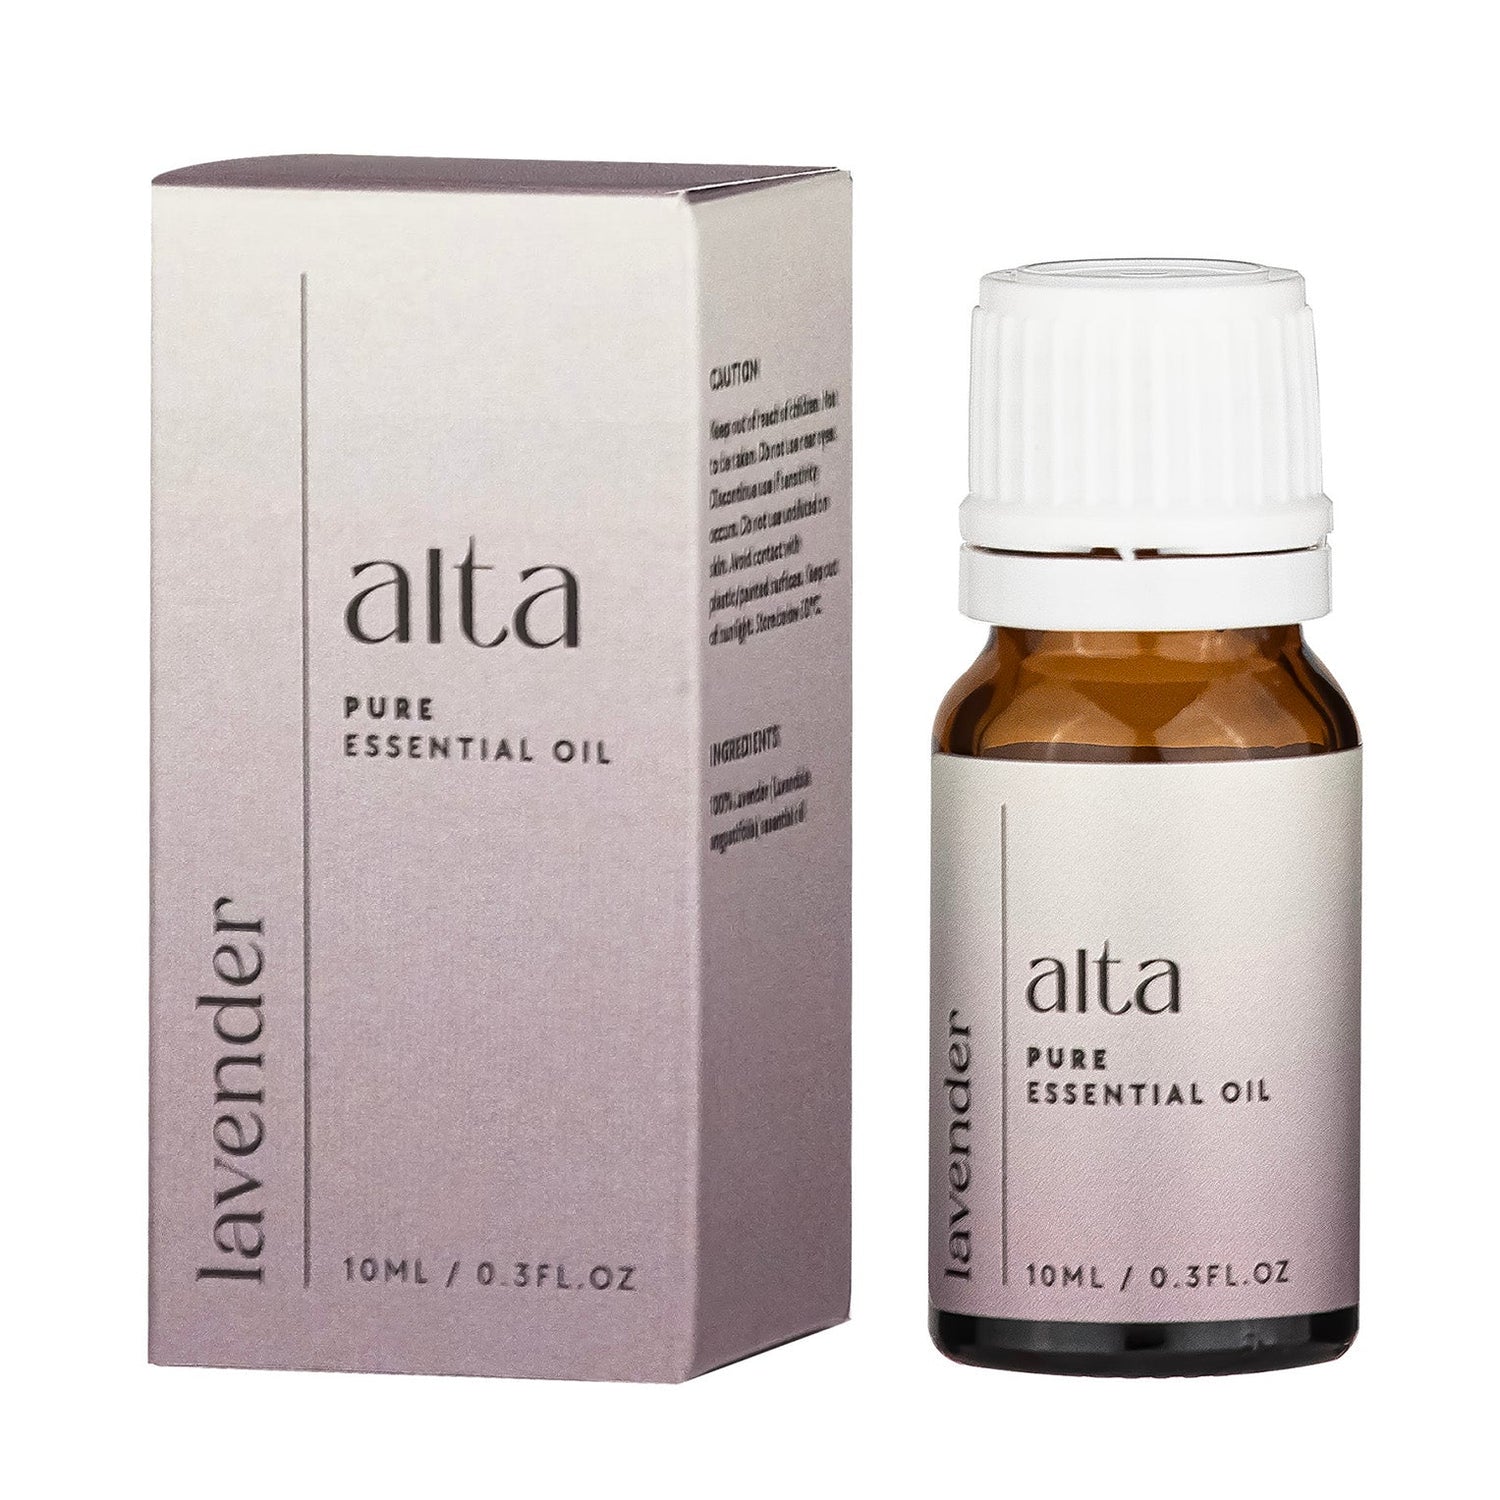 Alta Lavender Essential Oil - Altasphere